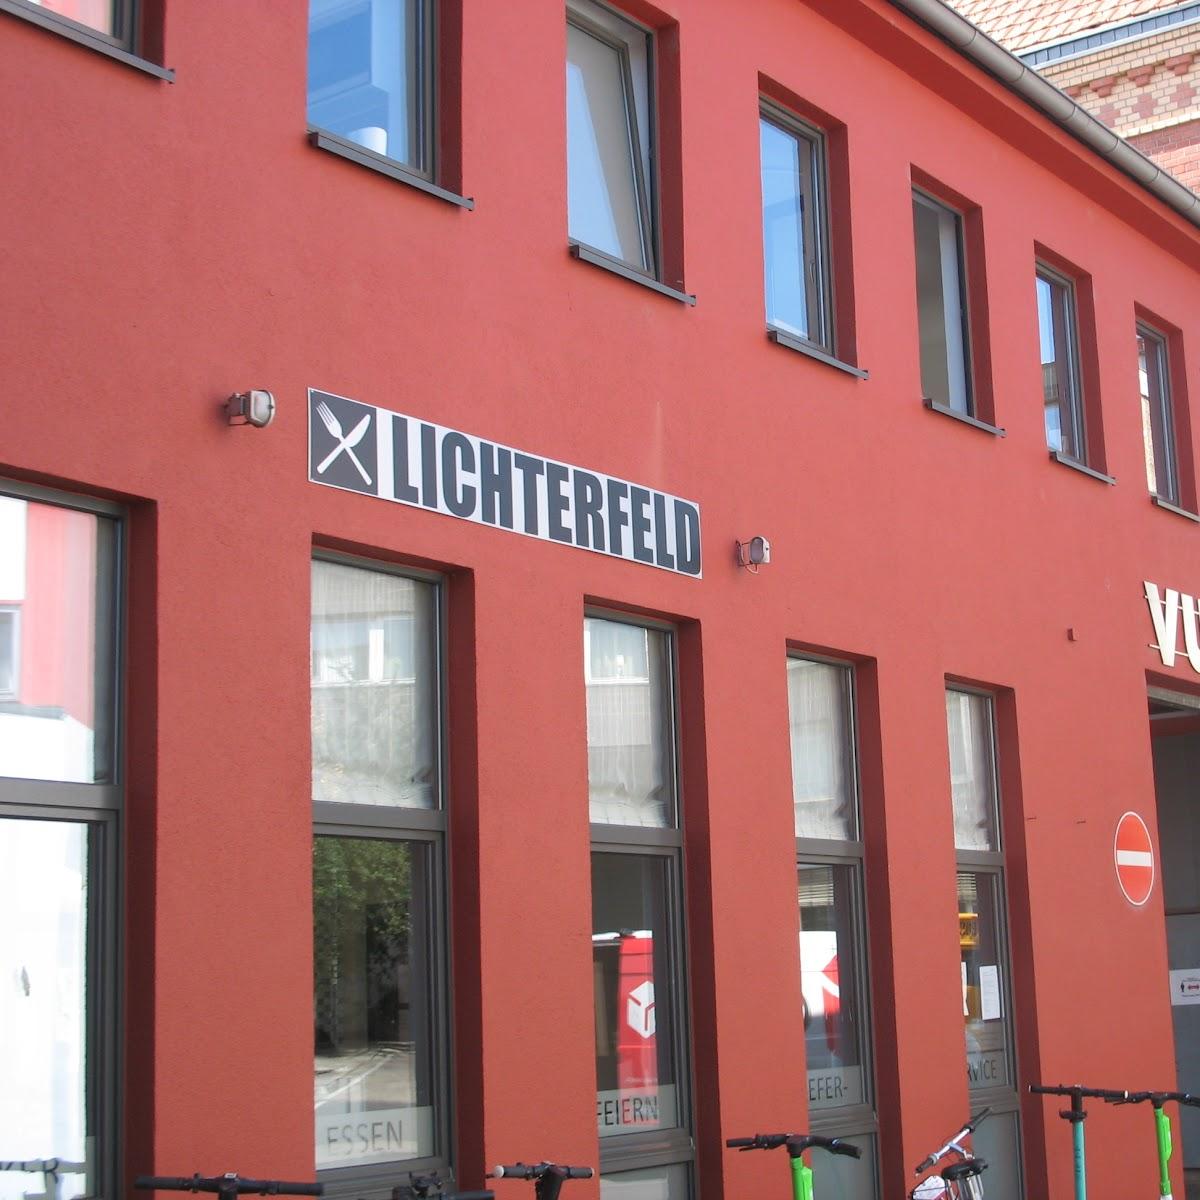 Restaurant "Lichterfeld" in Köln